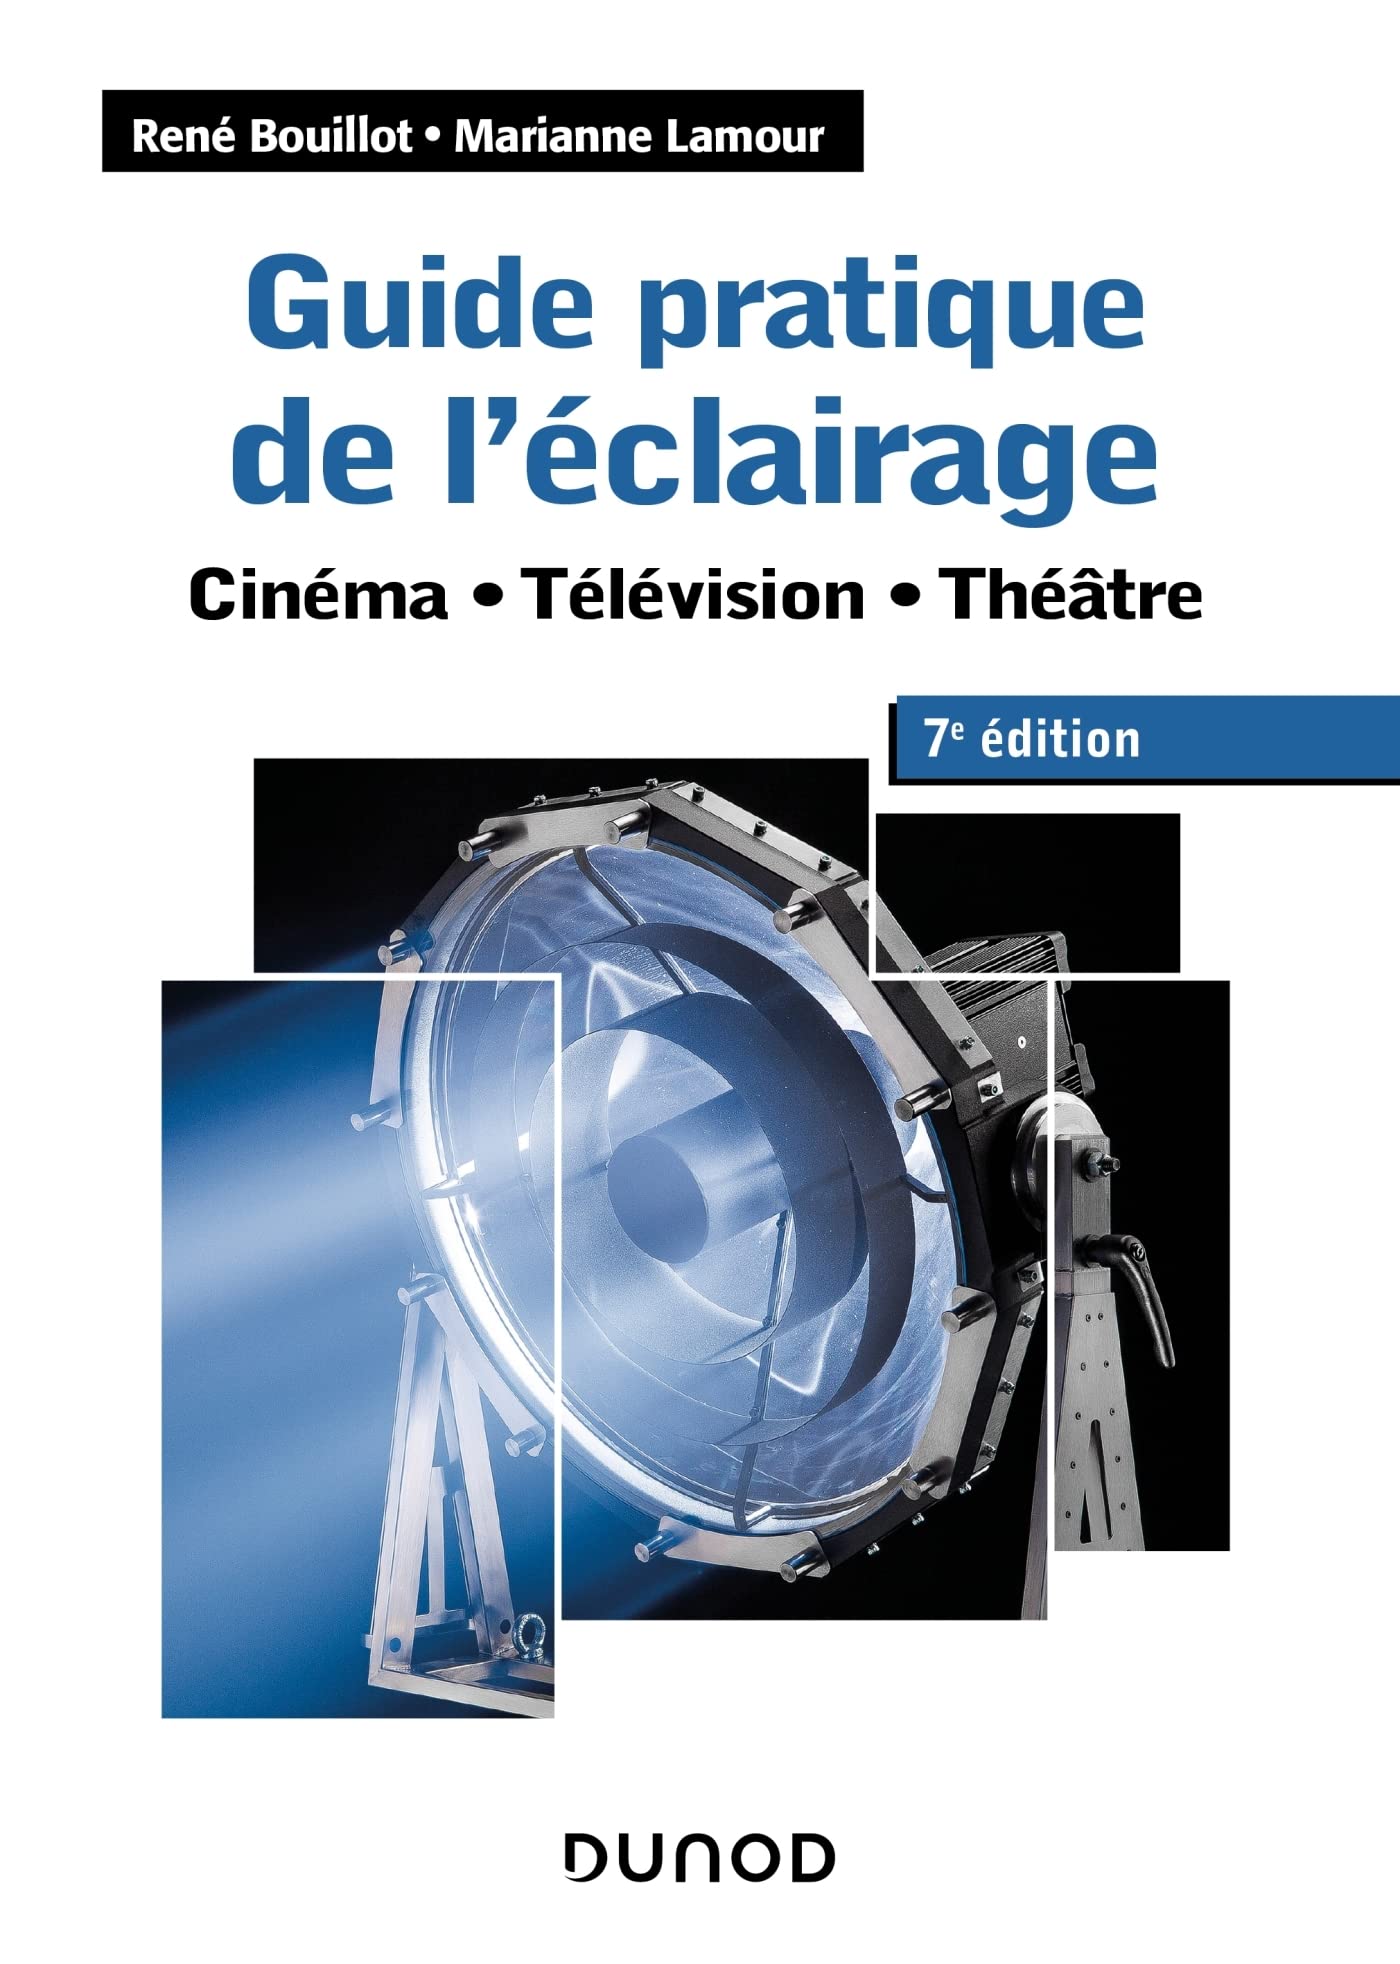 Location Lumière & Eclairage pour Tournage Cinéma I Paris & France